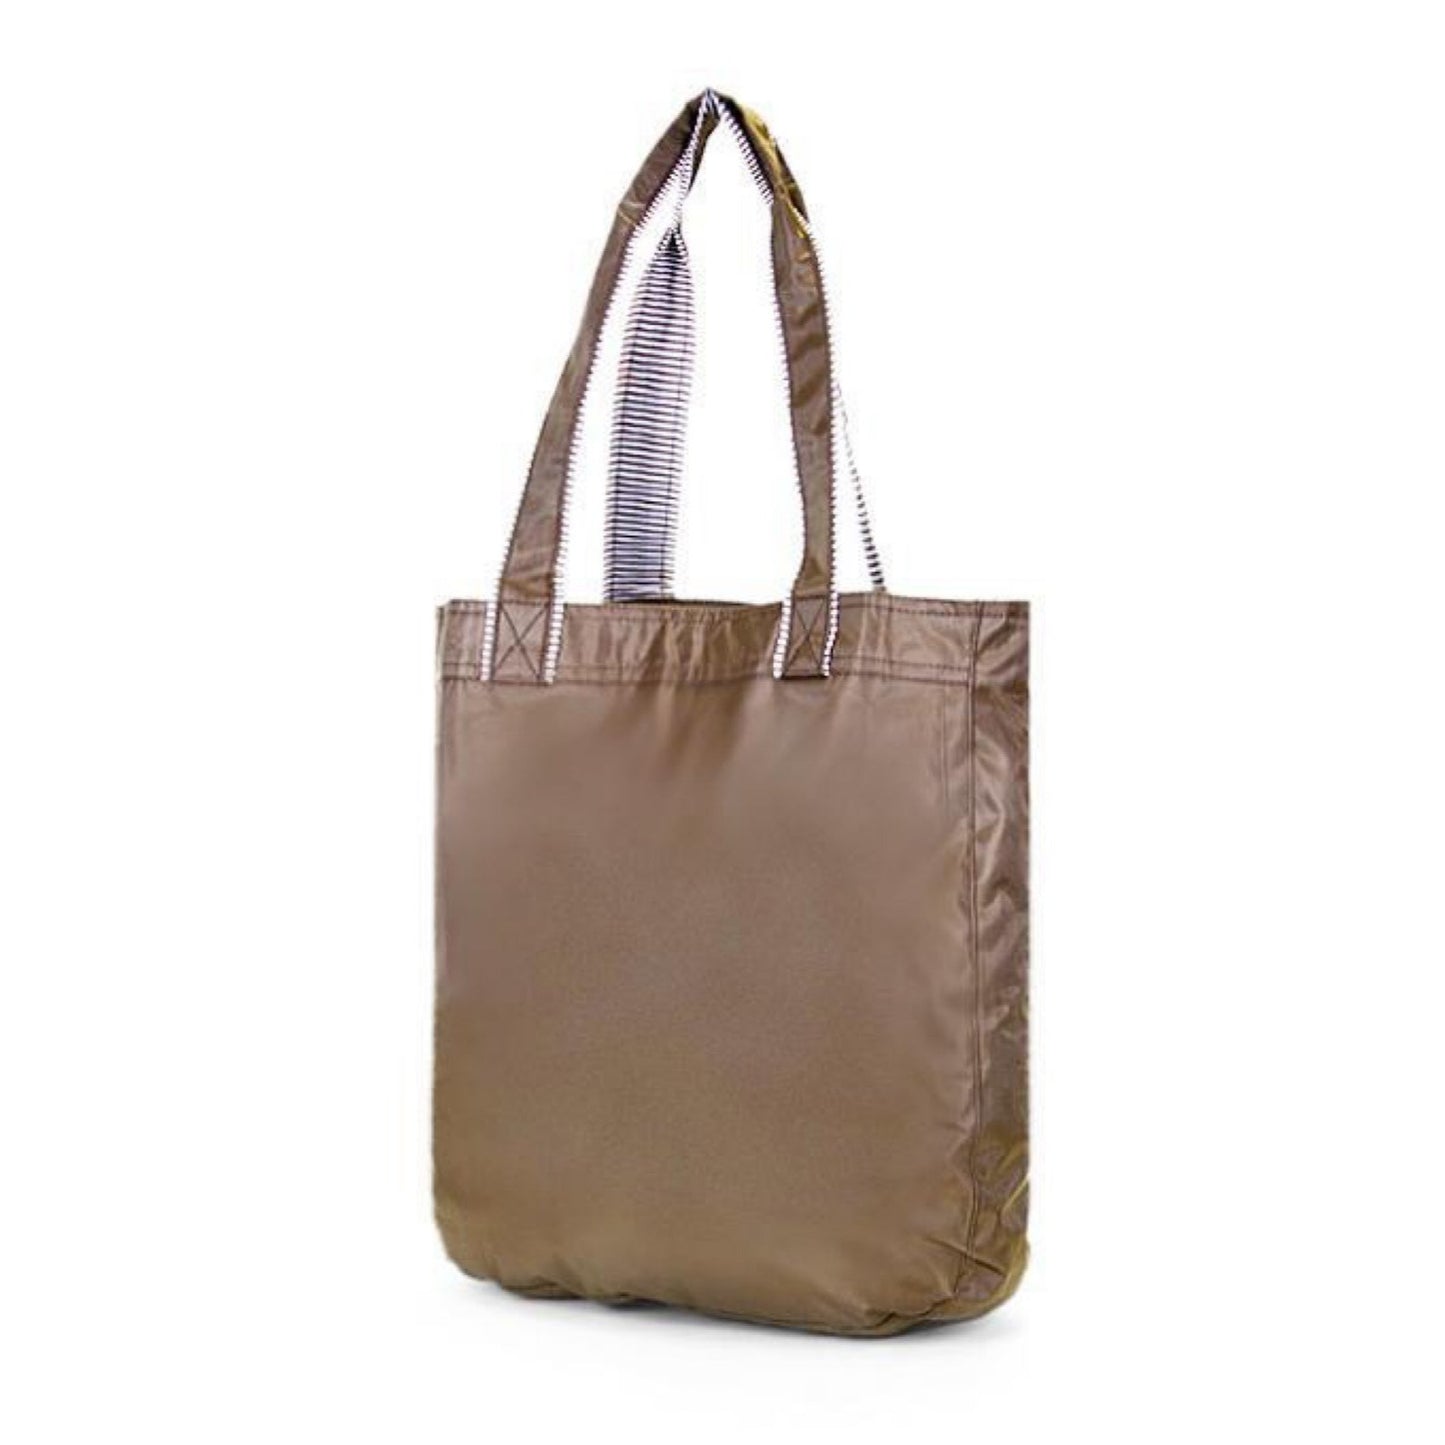 New brown Tote Bag